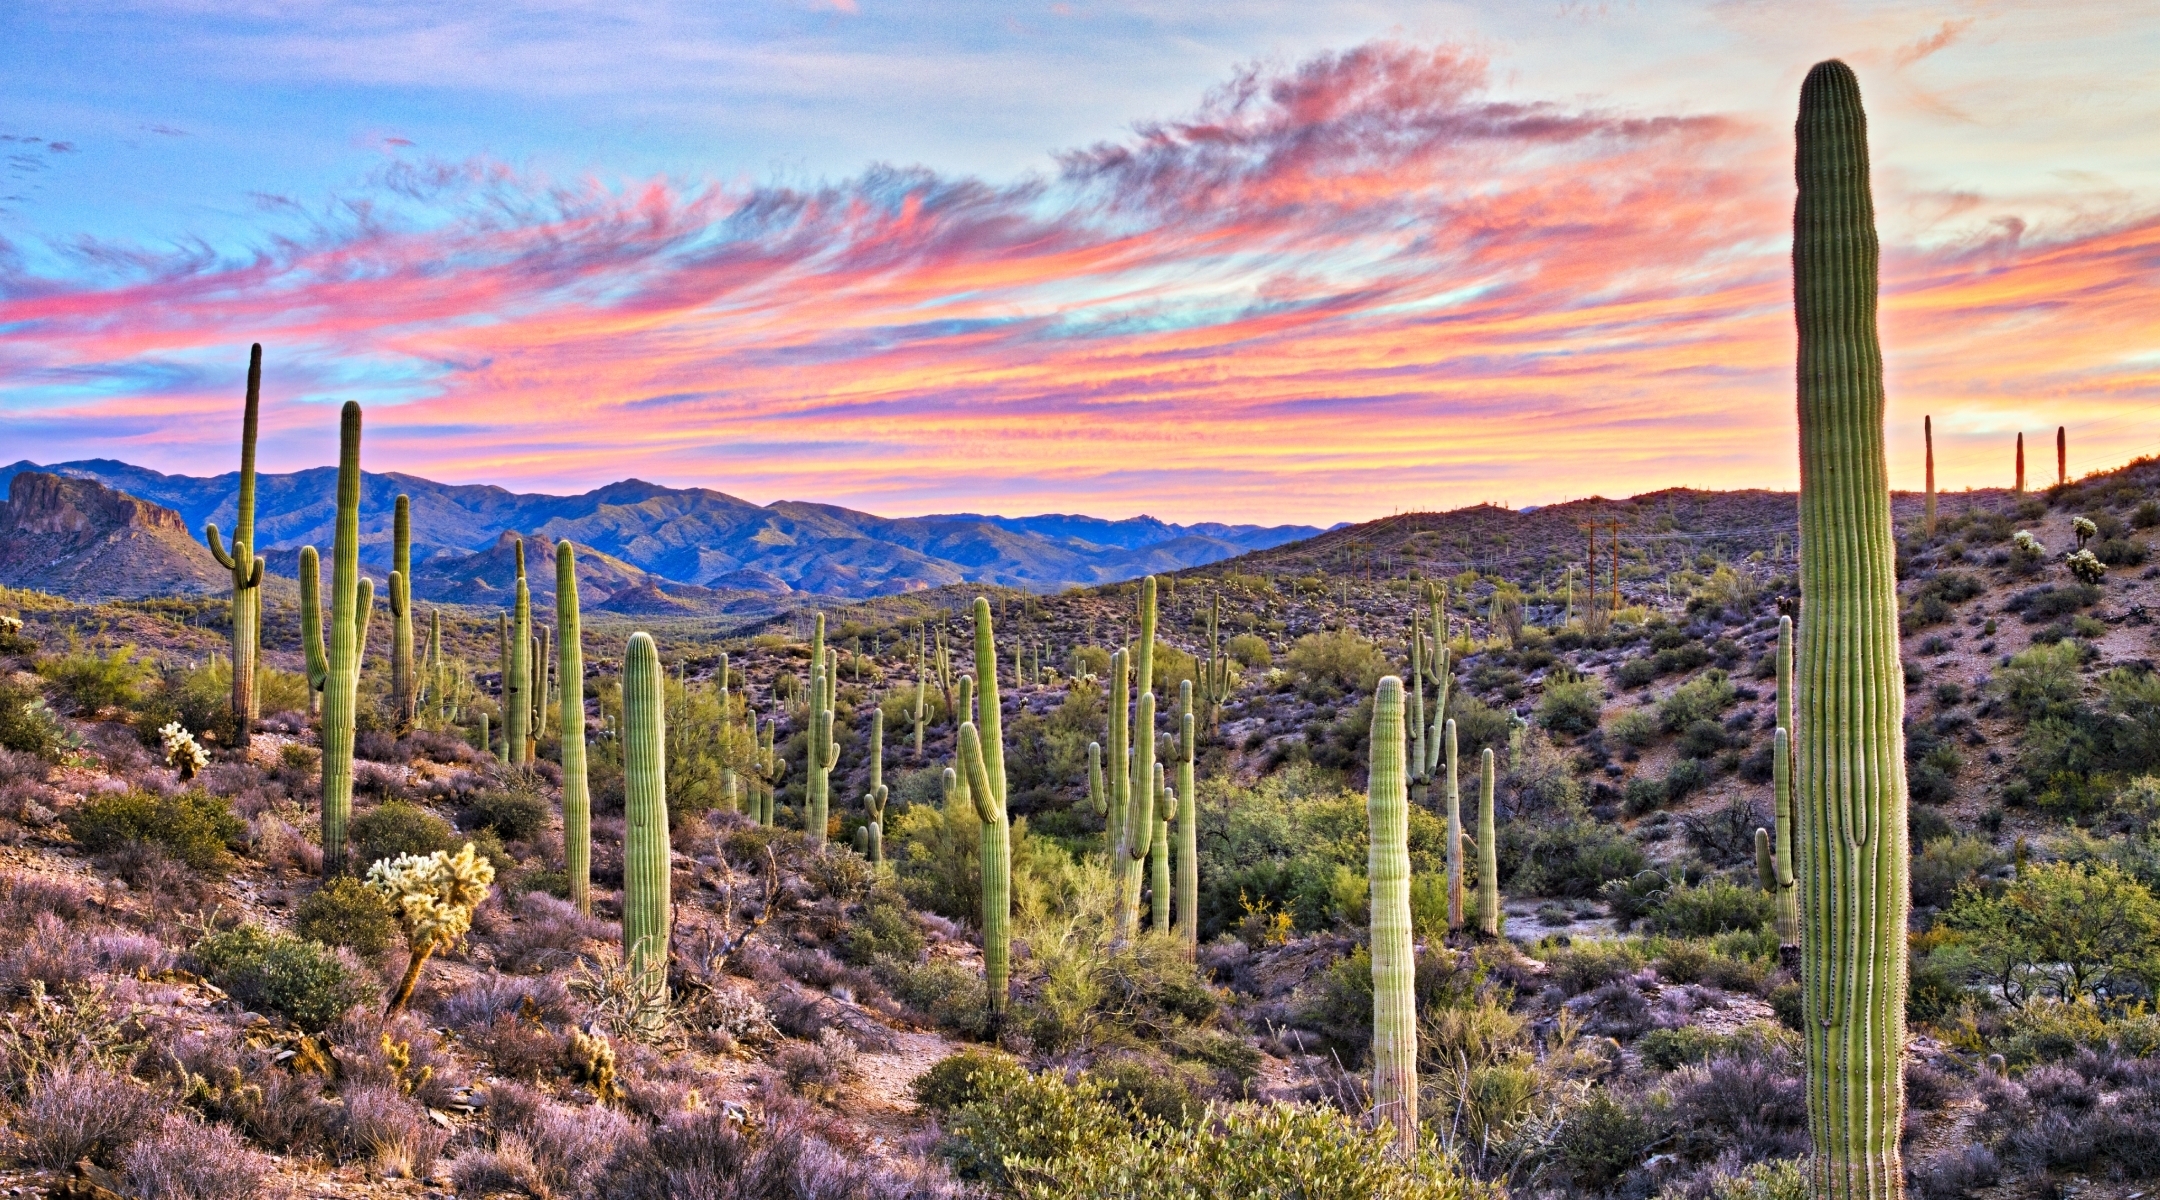 Desert landscape with cactus in Arizona